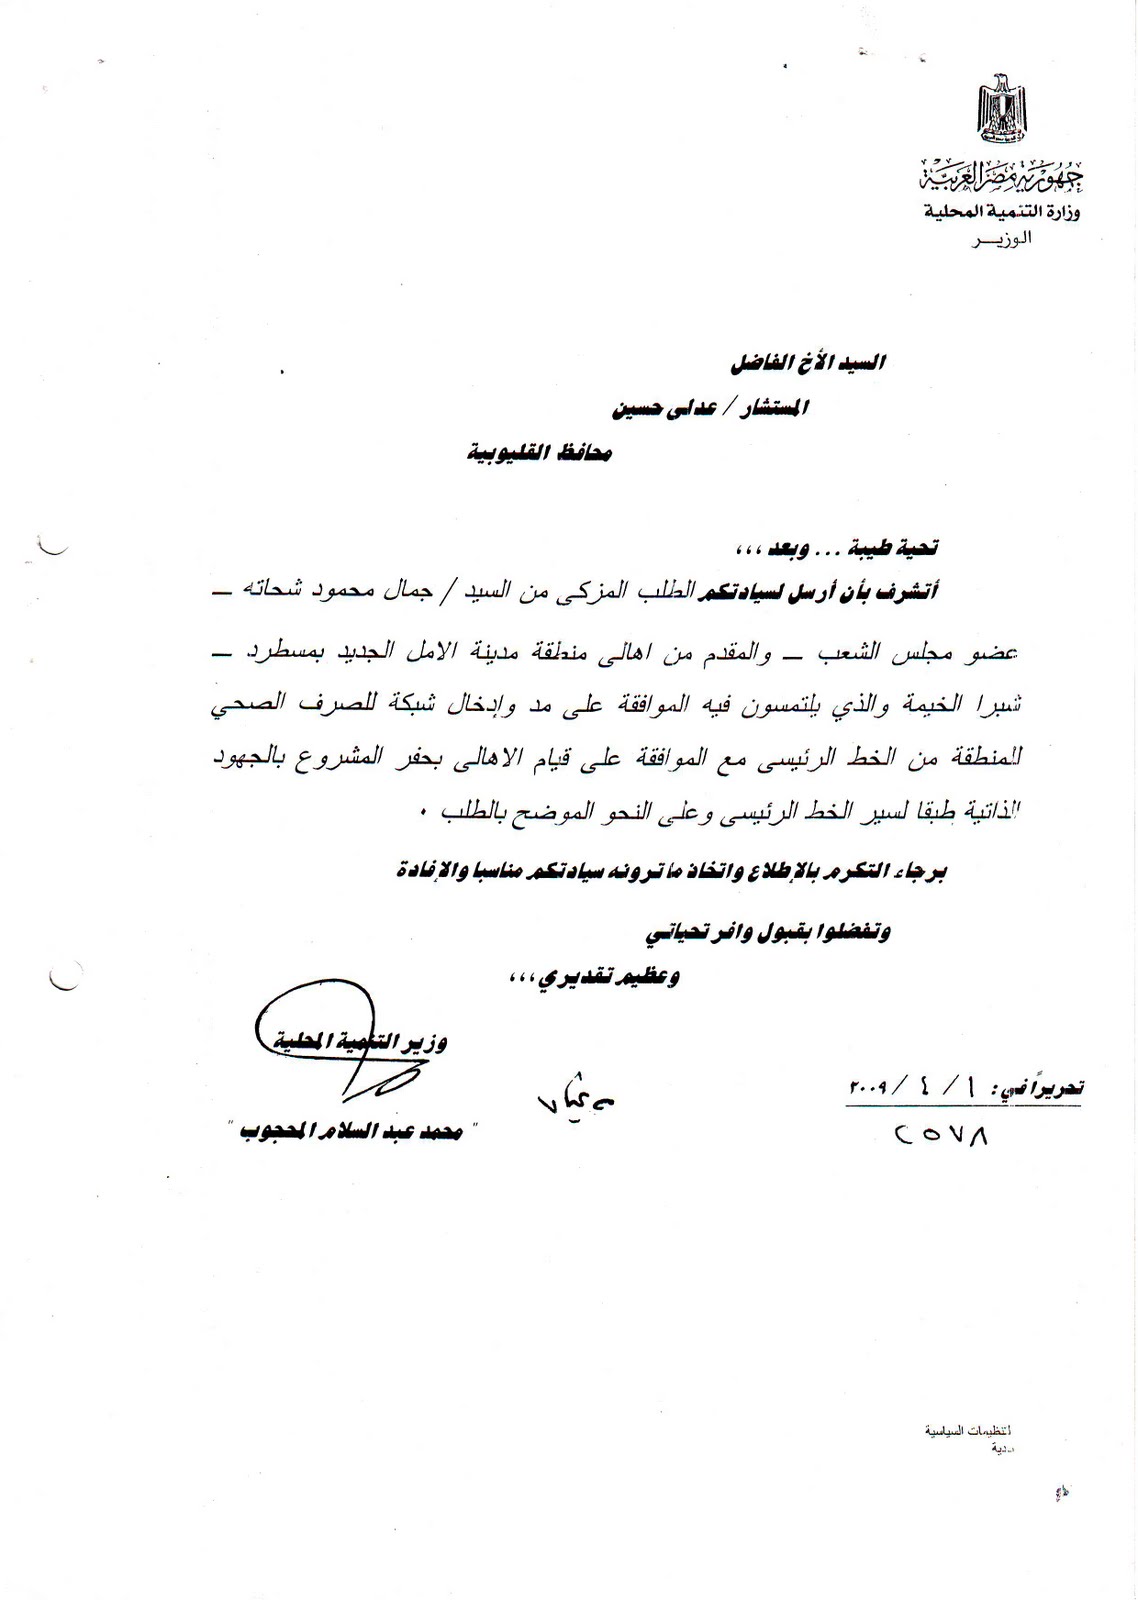 مدونة النائب جمال شحاتة وزير التنمية المحلية يوافق على طلب جمال شحاتة